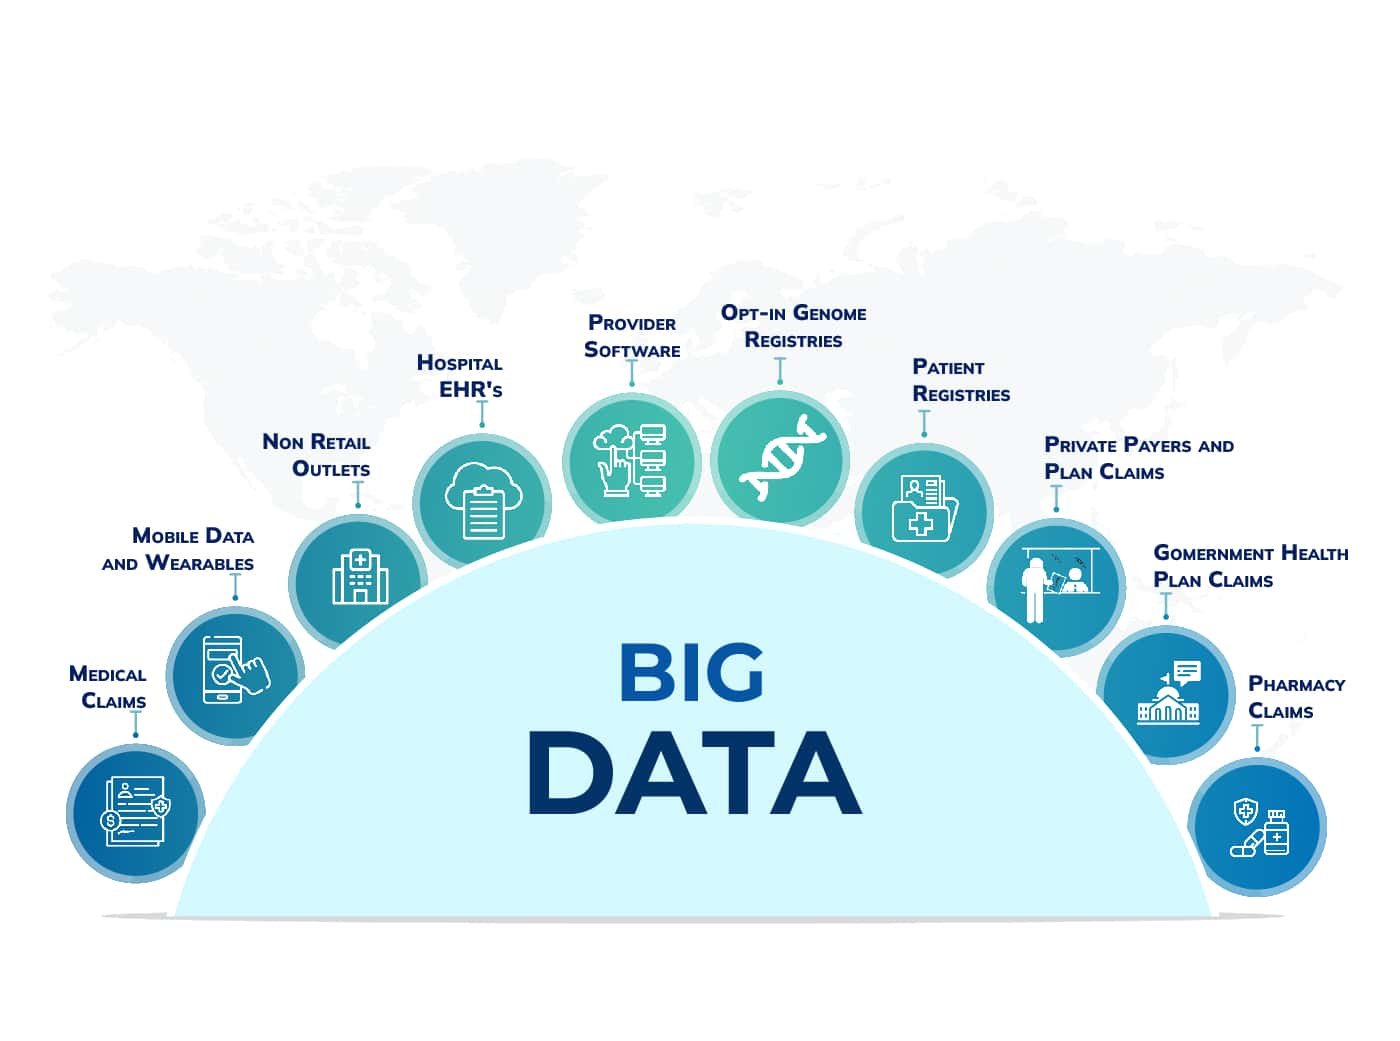 Big data applications